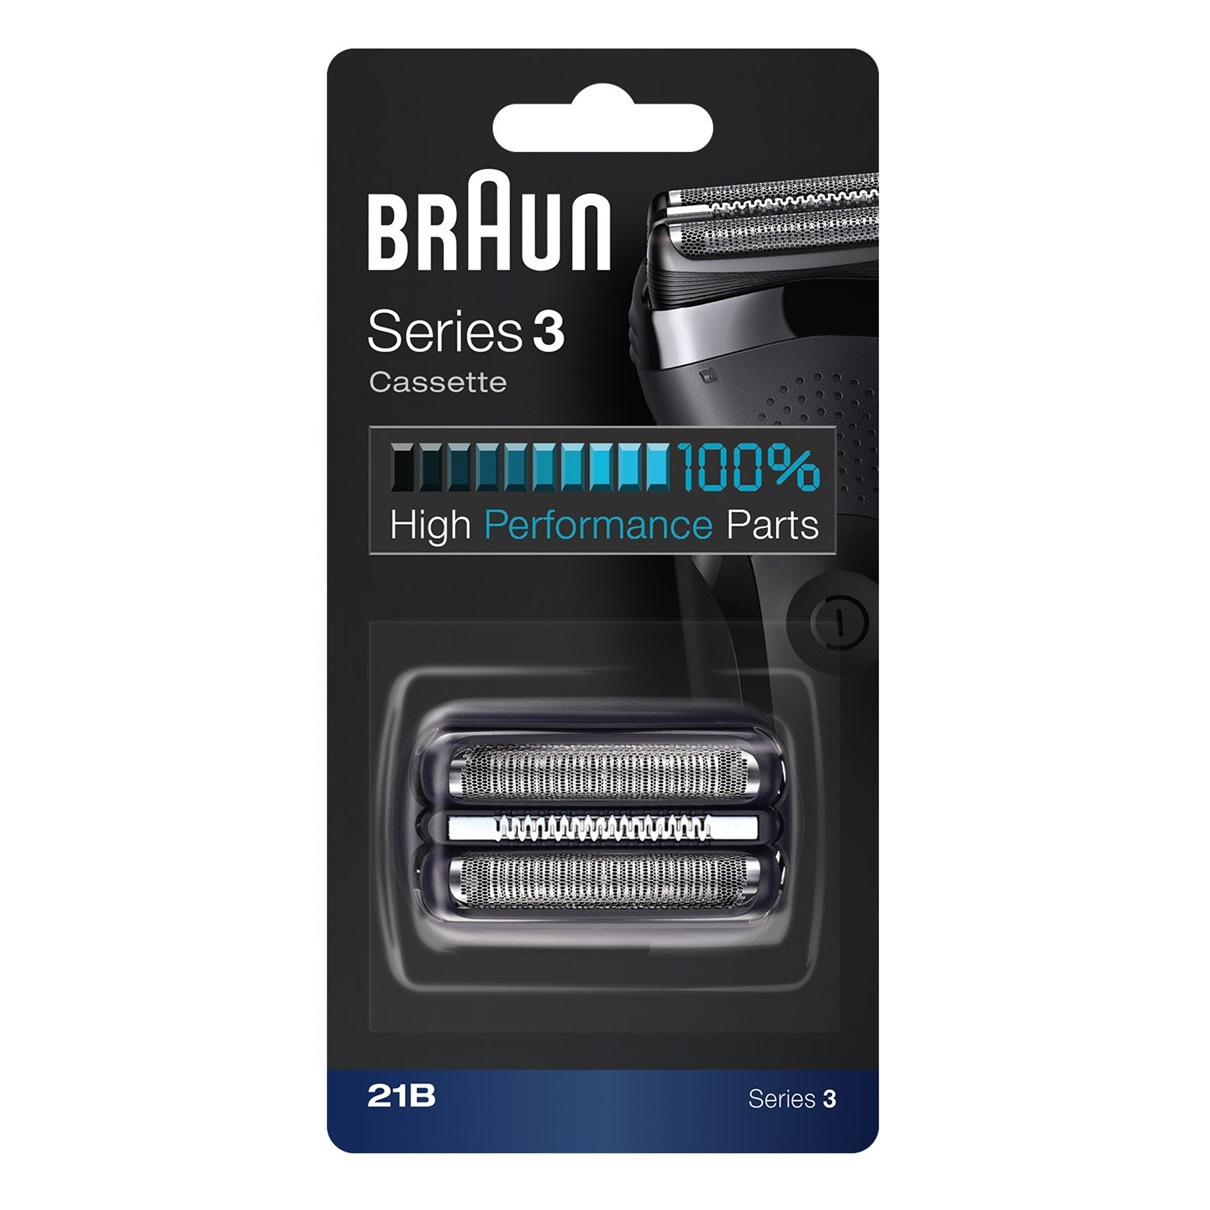 Сетка и режущий блок для бритв Braun 21B сетка блок braun series 3 21b